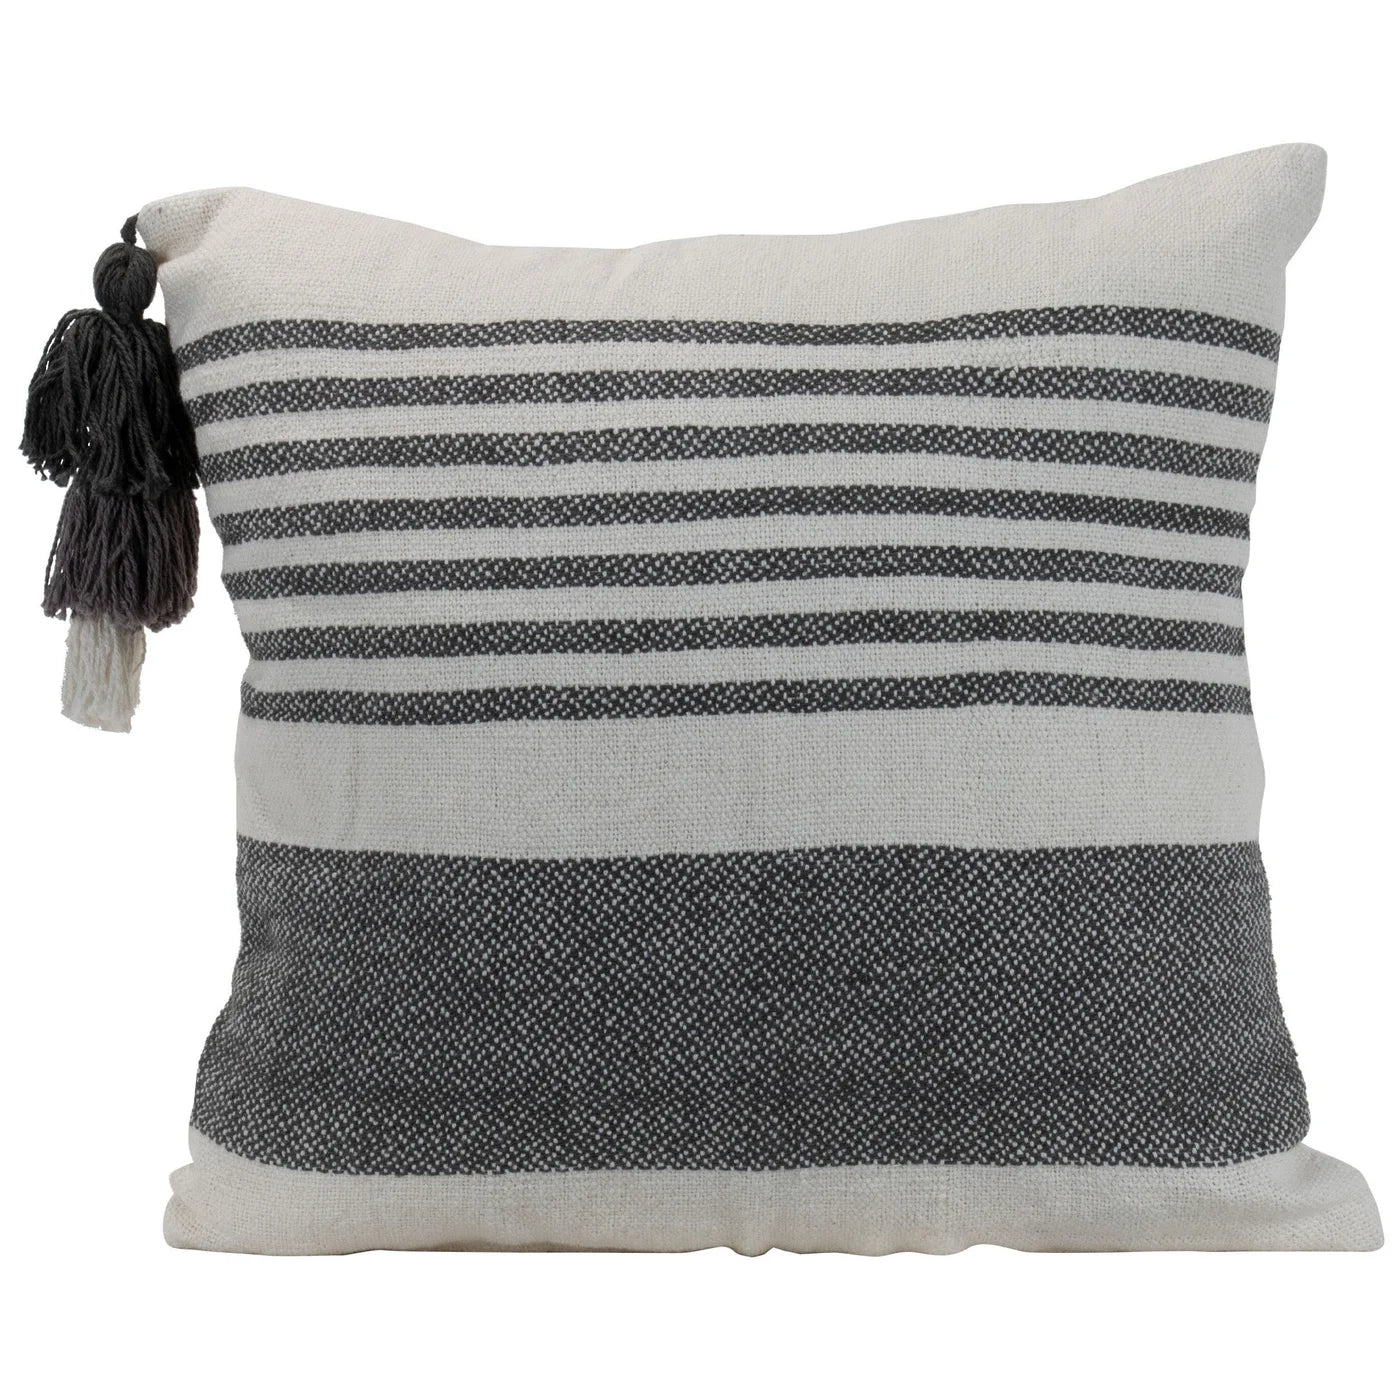 18 x 18 Charcoal Stripe Pillow